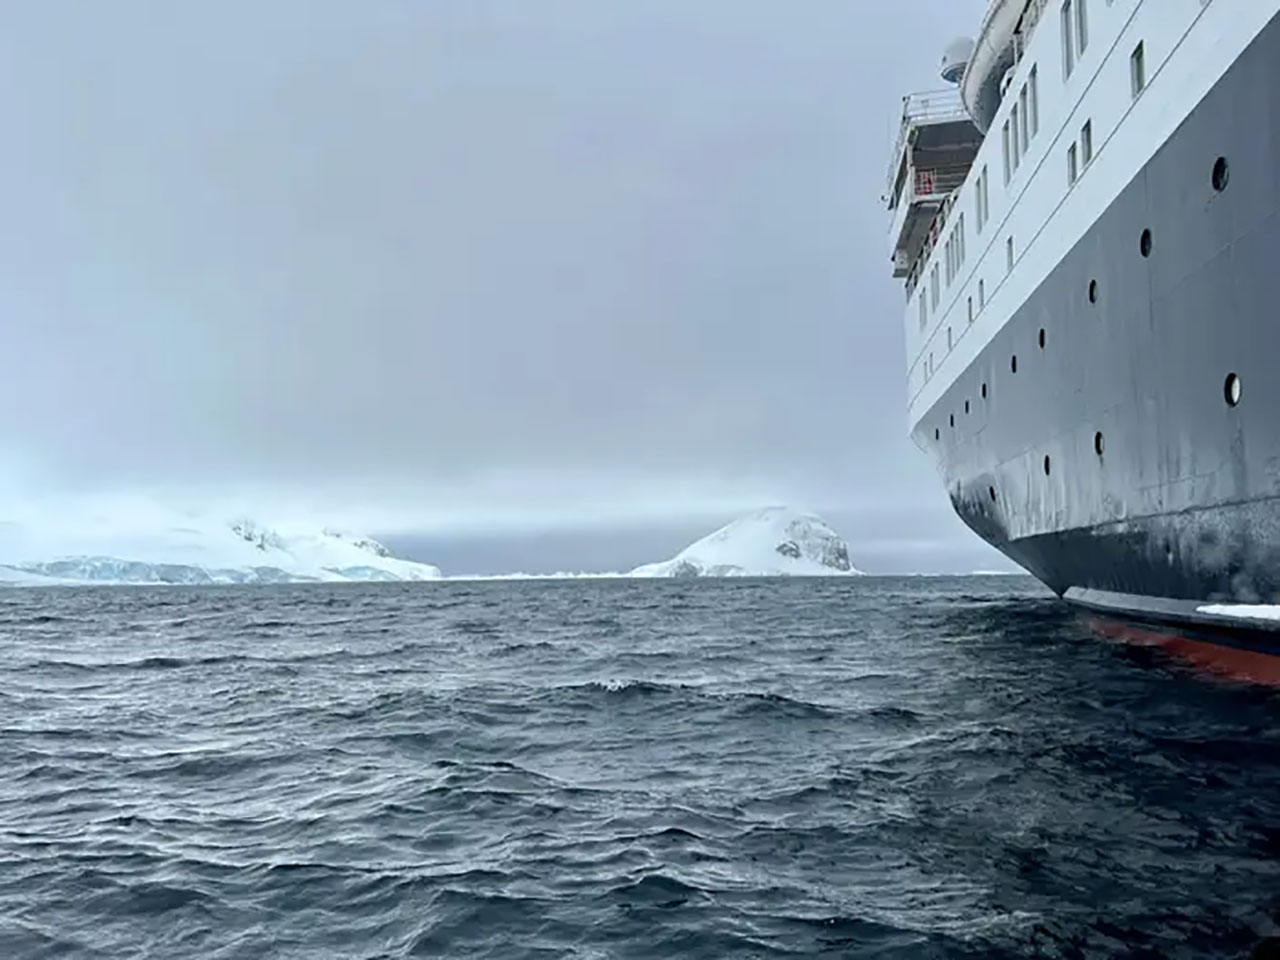 رحلة فريدة إلى القارة القطبية الجنوبية على متن سفينة خاصة بتكلفة 37 ألف ريال 2